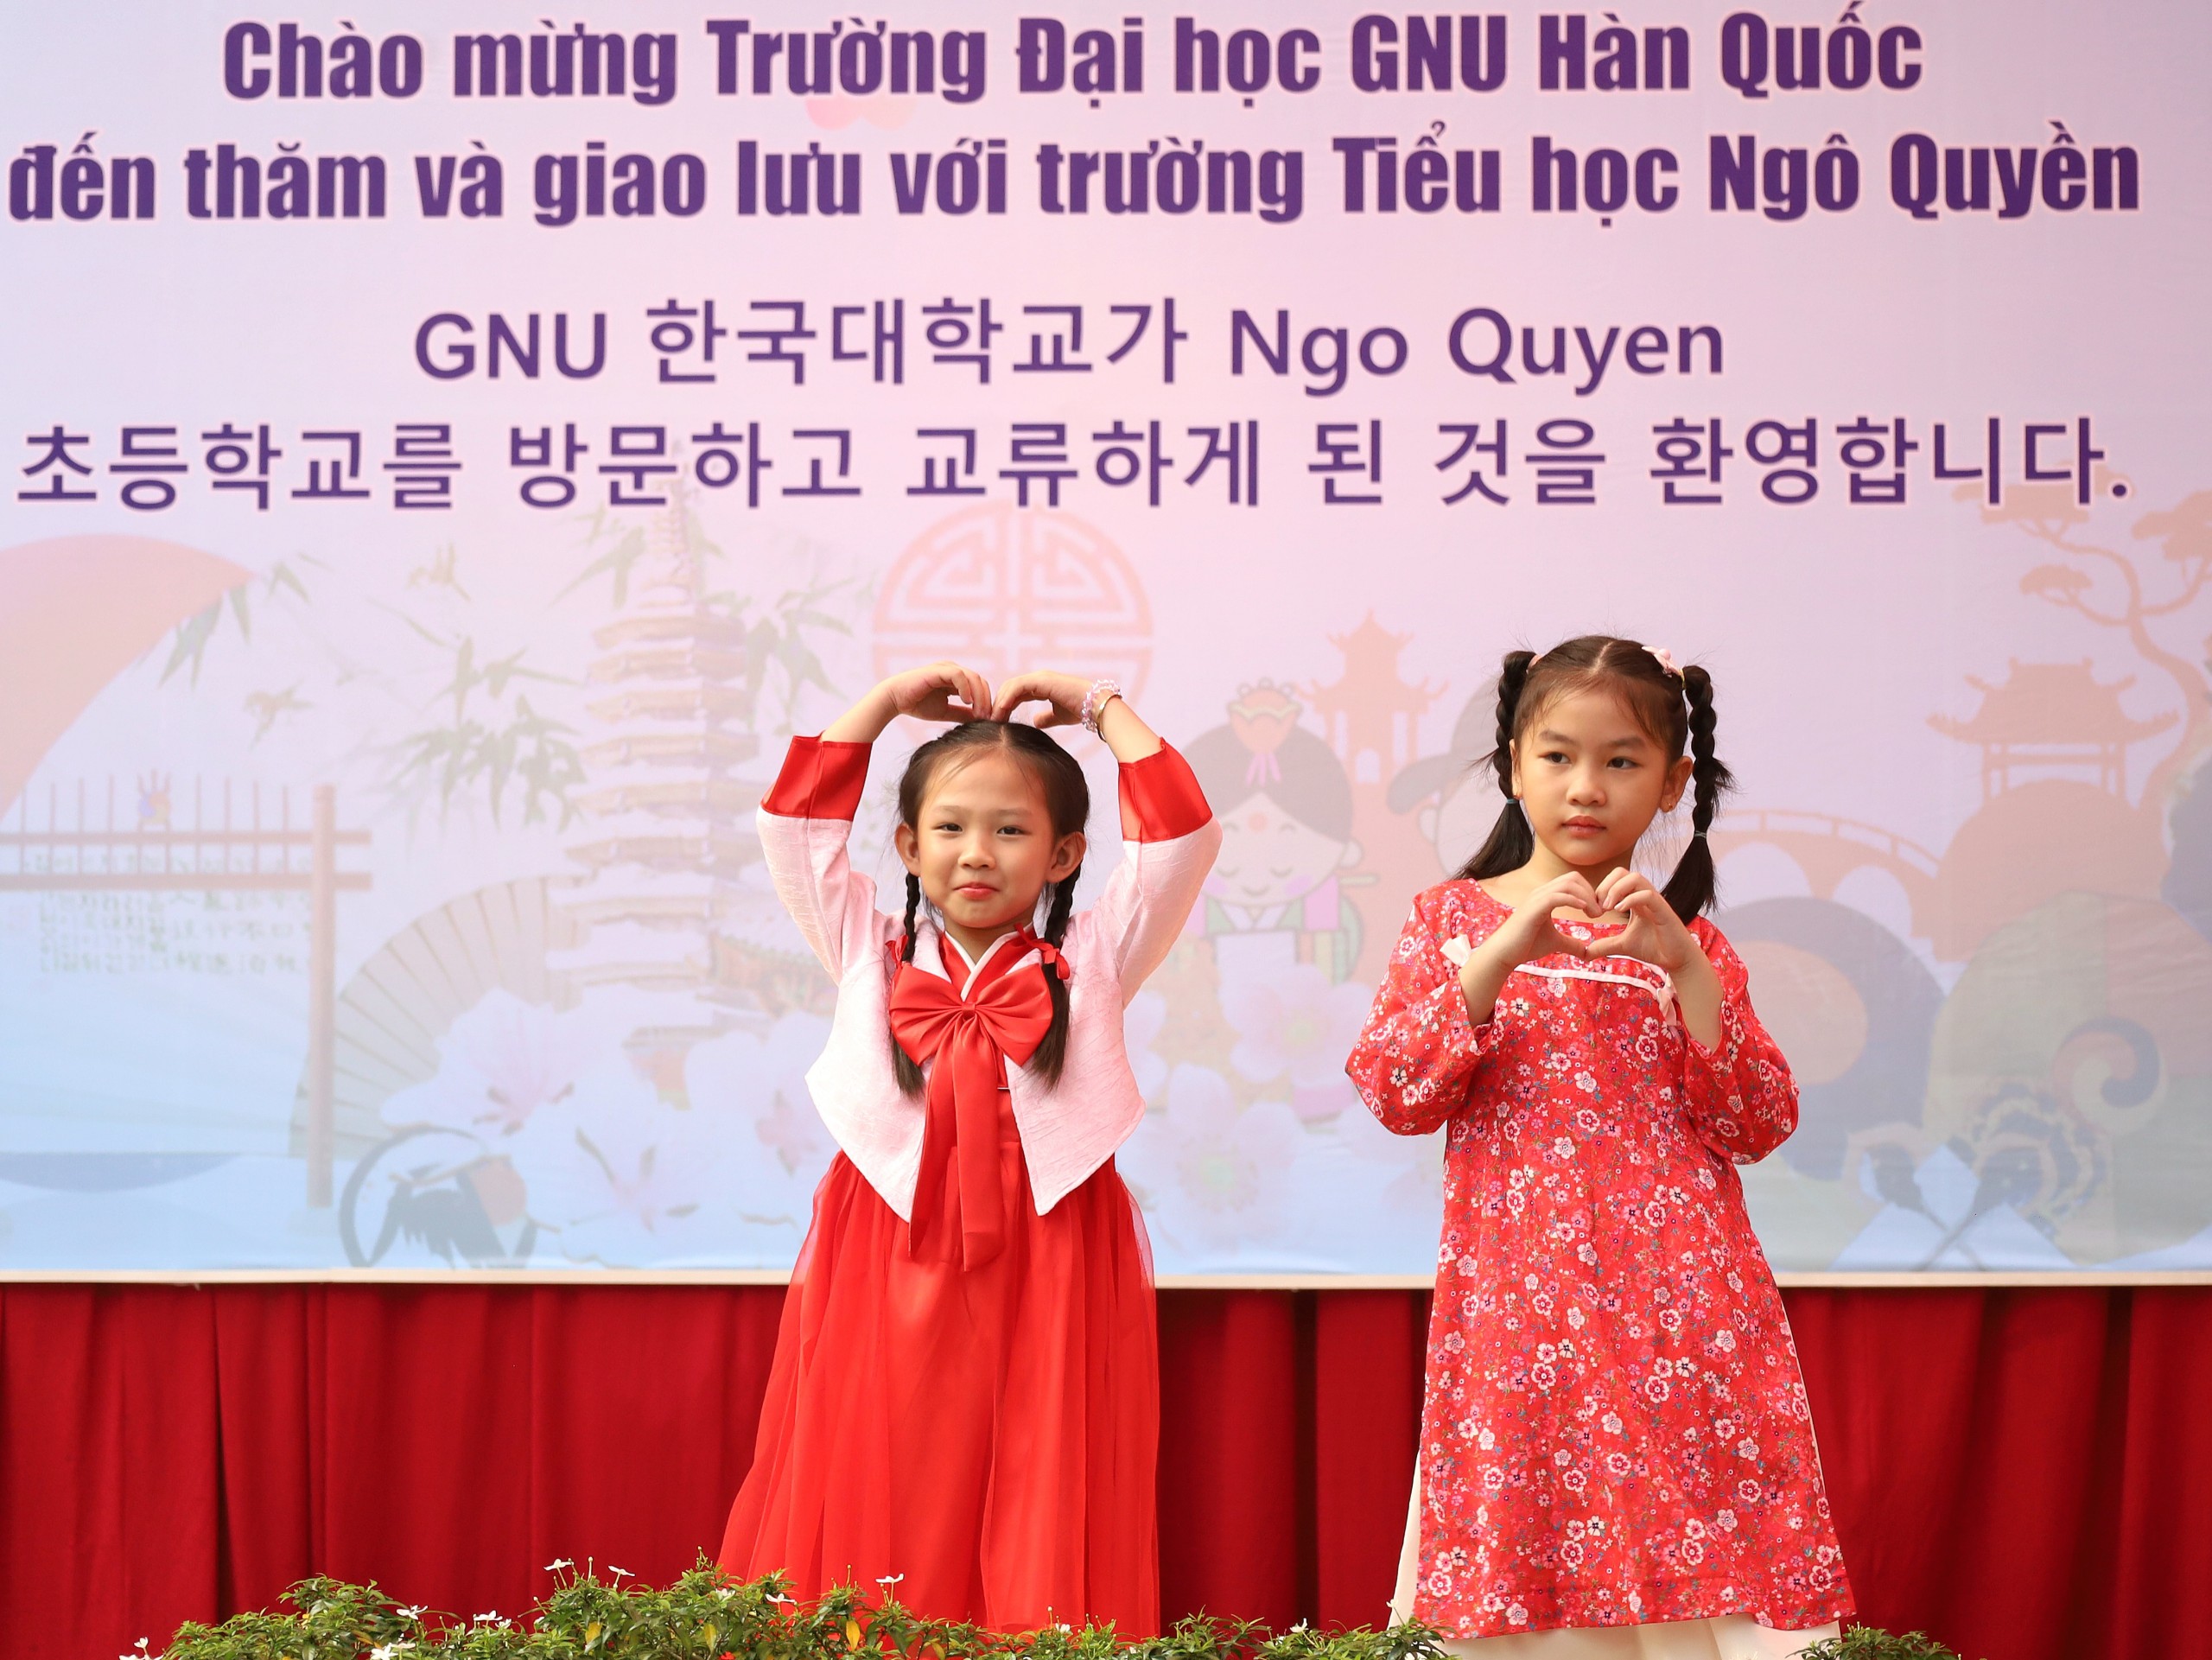 Cùng nhau trình diễn các tiết mục thời trang Việt Nam - Hàn Quốc.